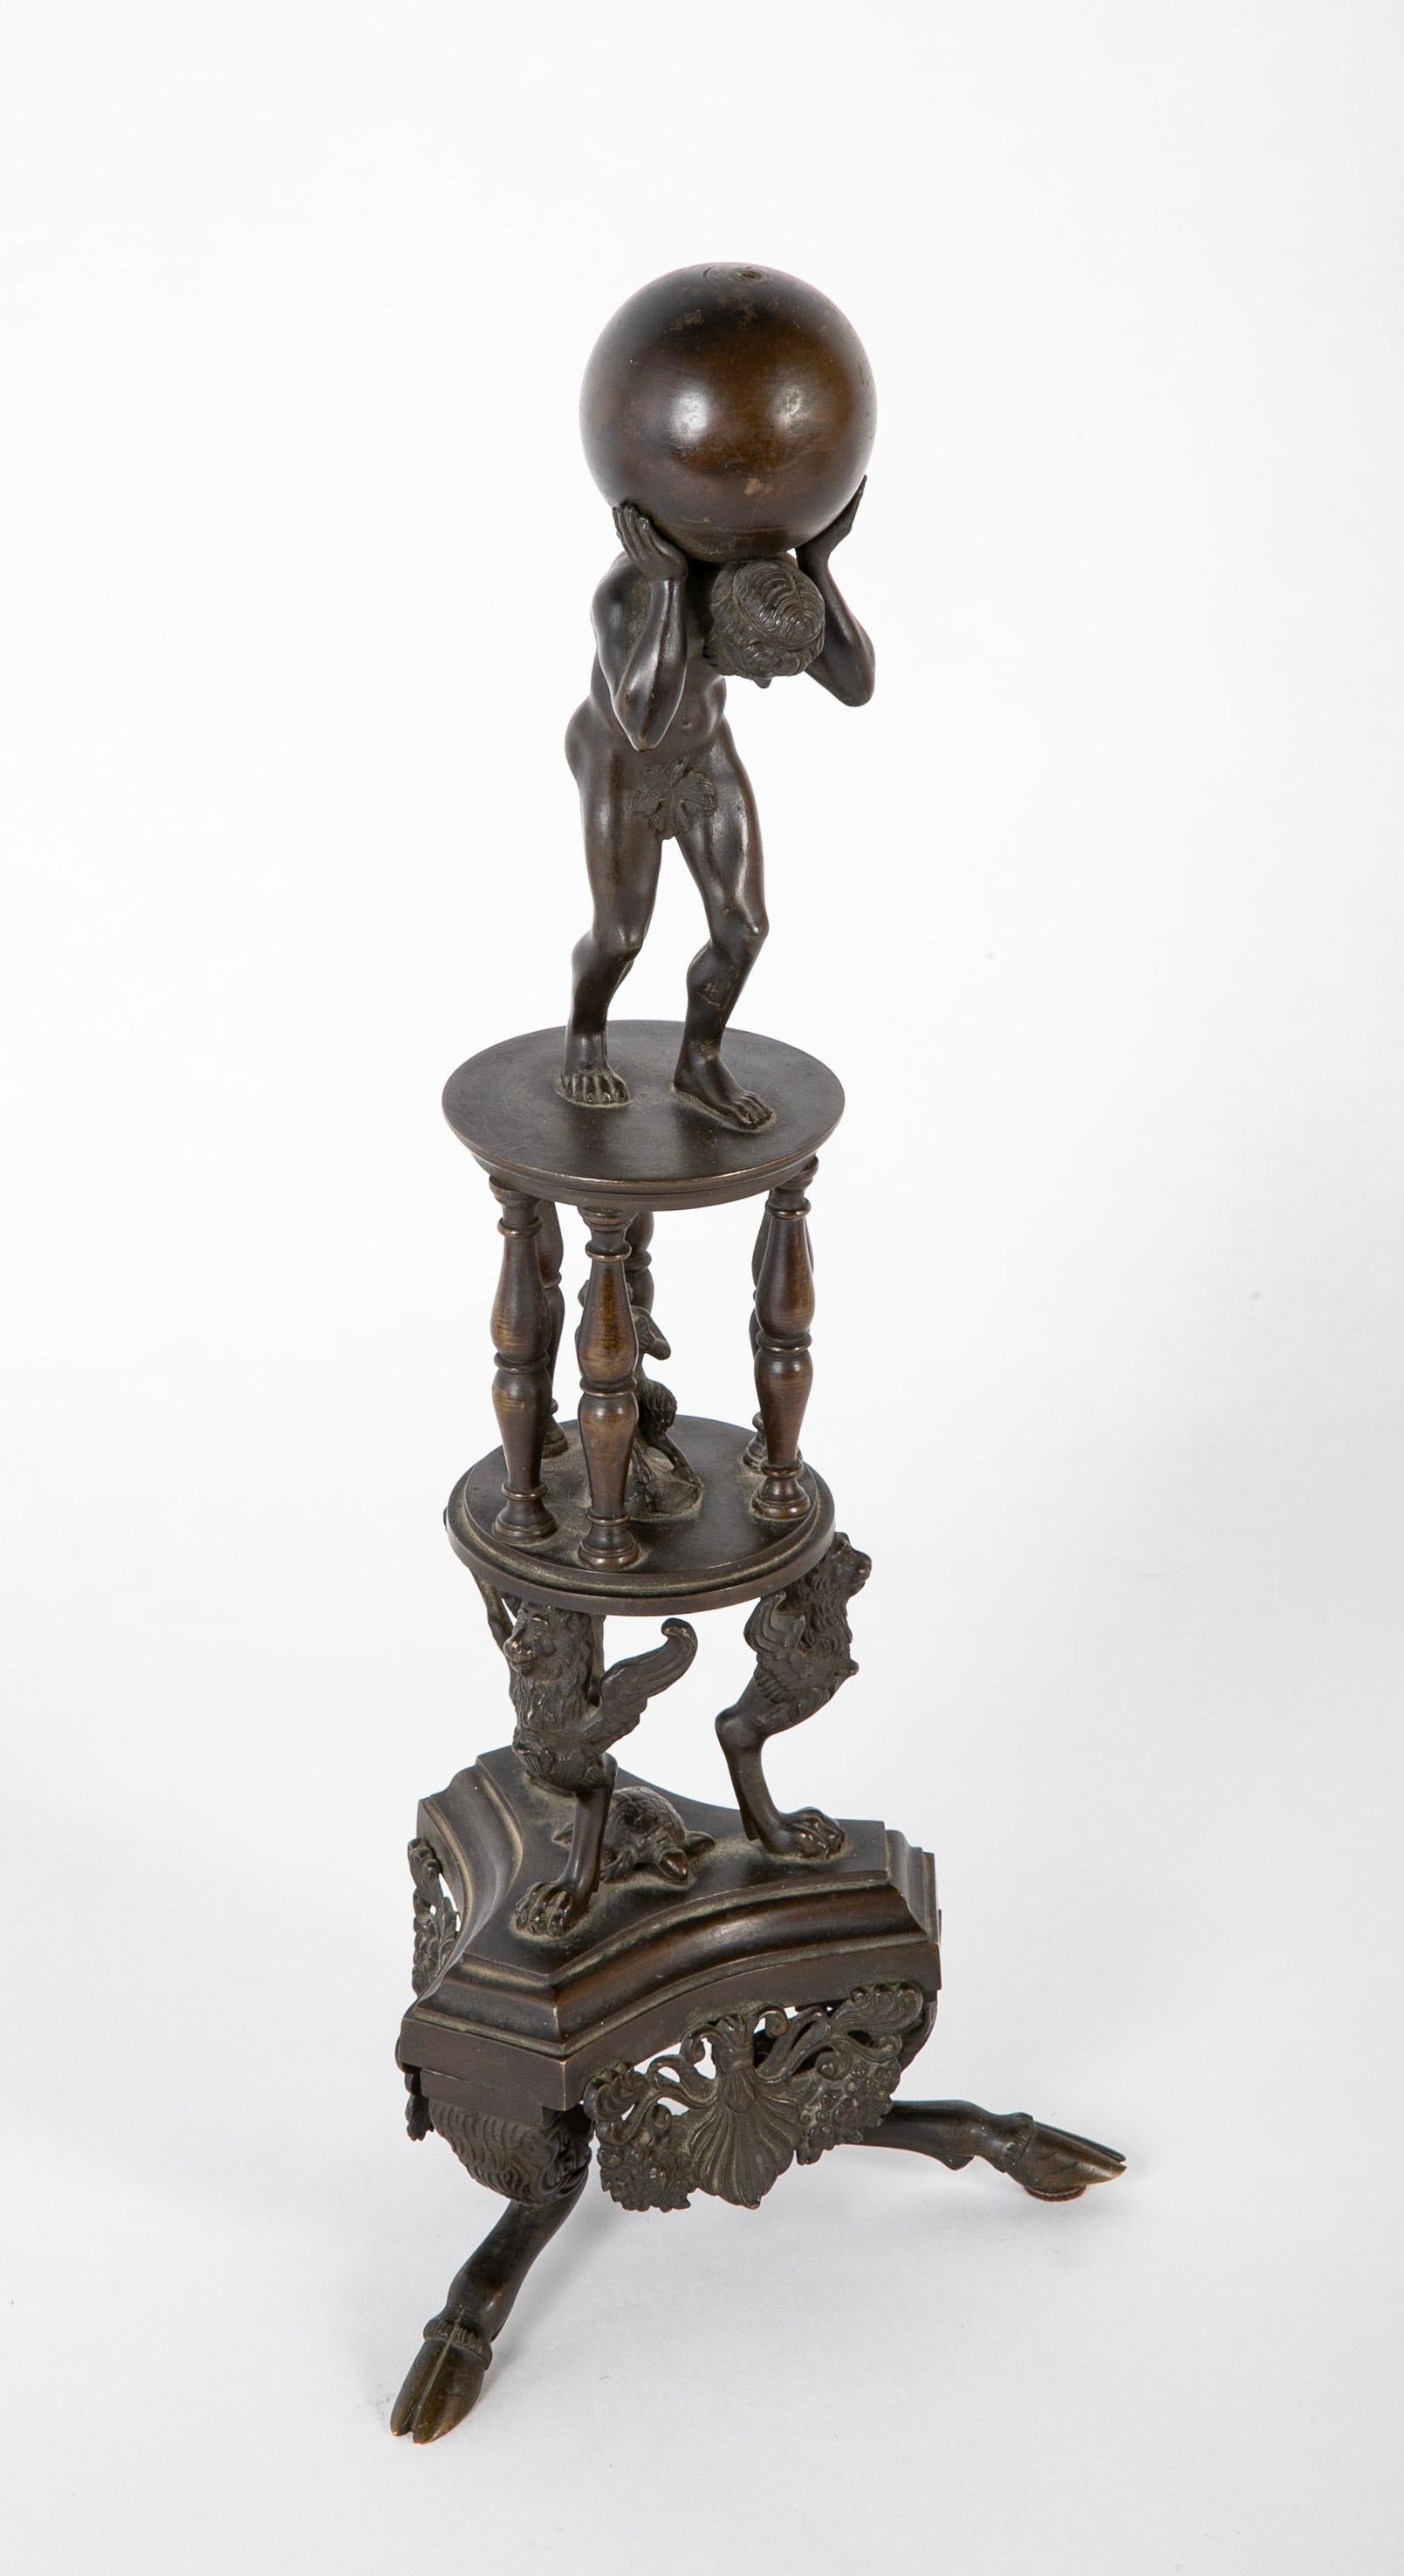 Grand Tour italien en bronze dans le style Renaissance de l'Atlas sur une base tripode élaborée se terminant par des pieds en sabot. Le dieu grec Atlas est représenté nu au sommet, tenant le monde sur ses épaules, tandis qu'en bas, dans une arcade à